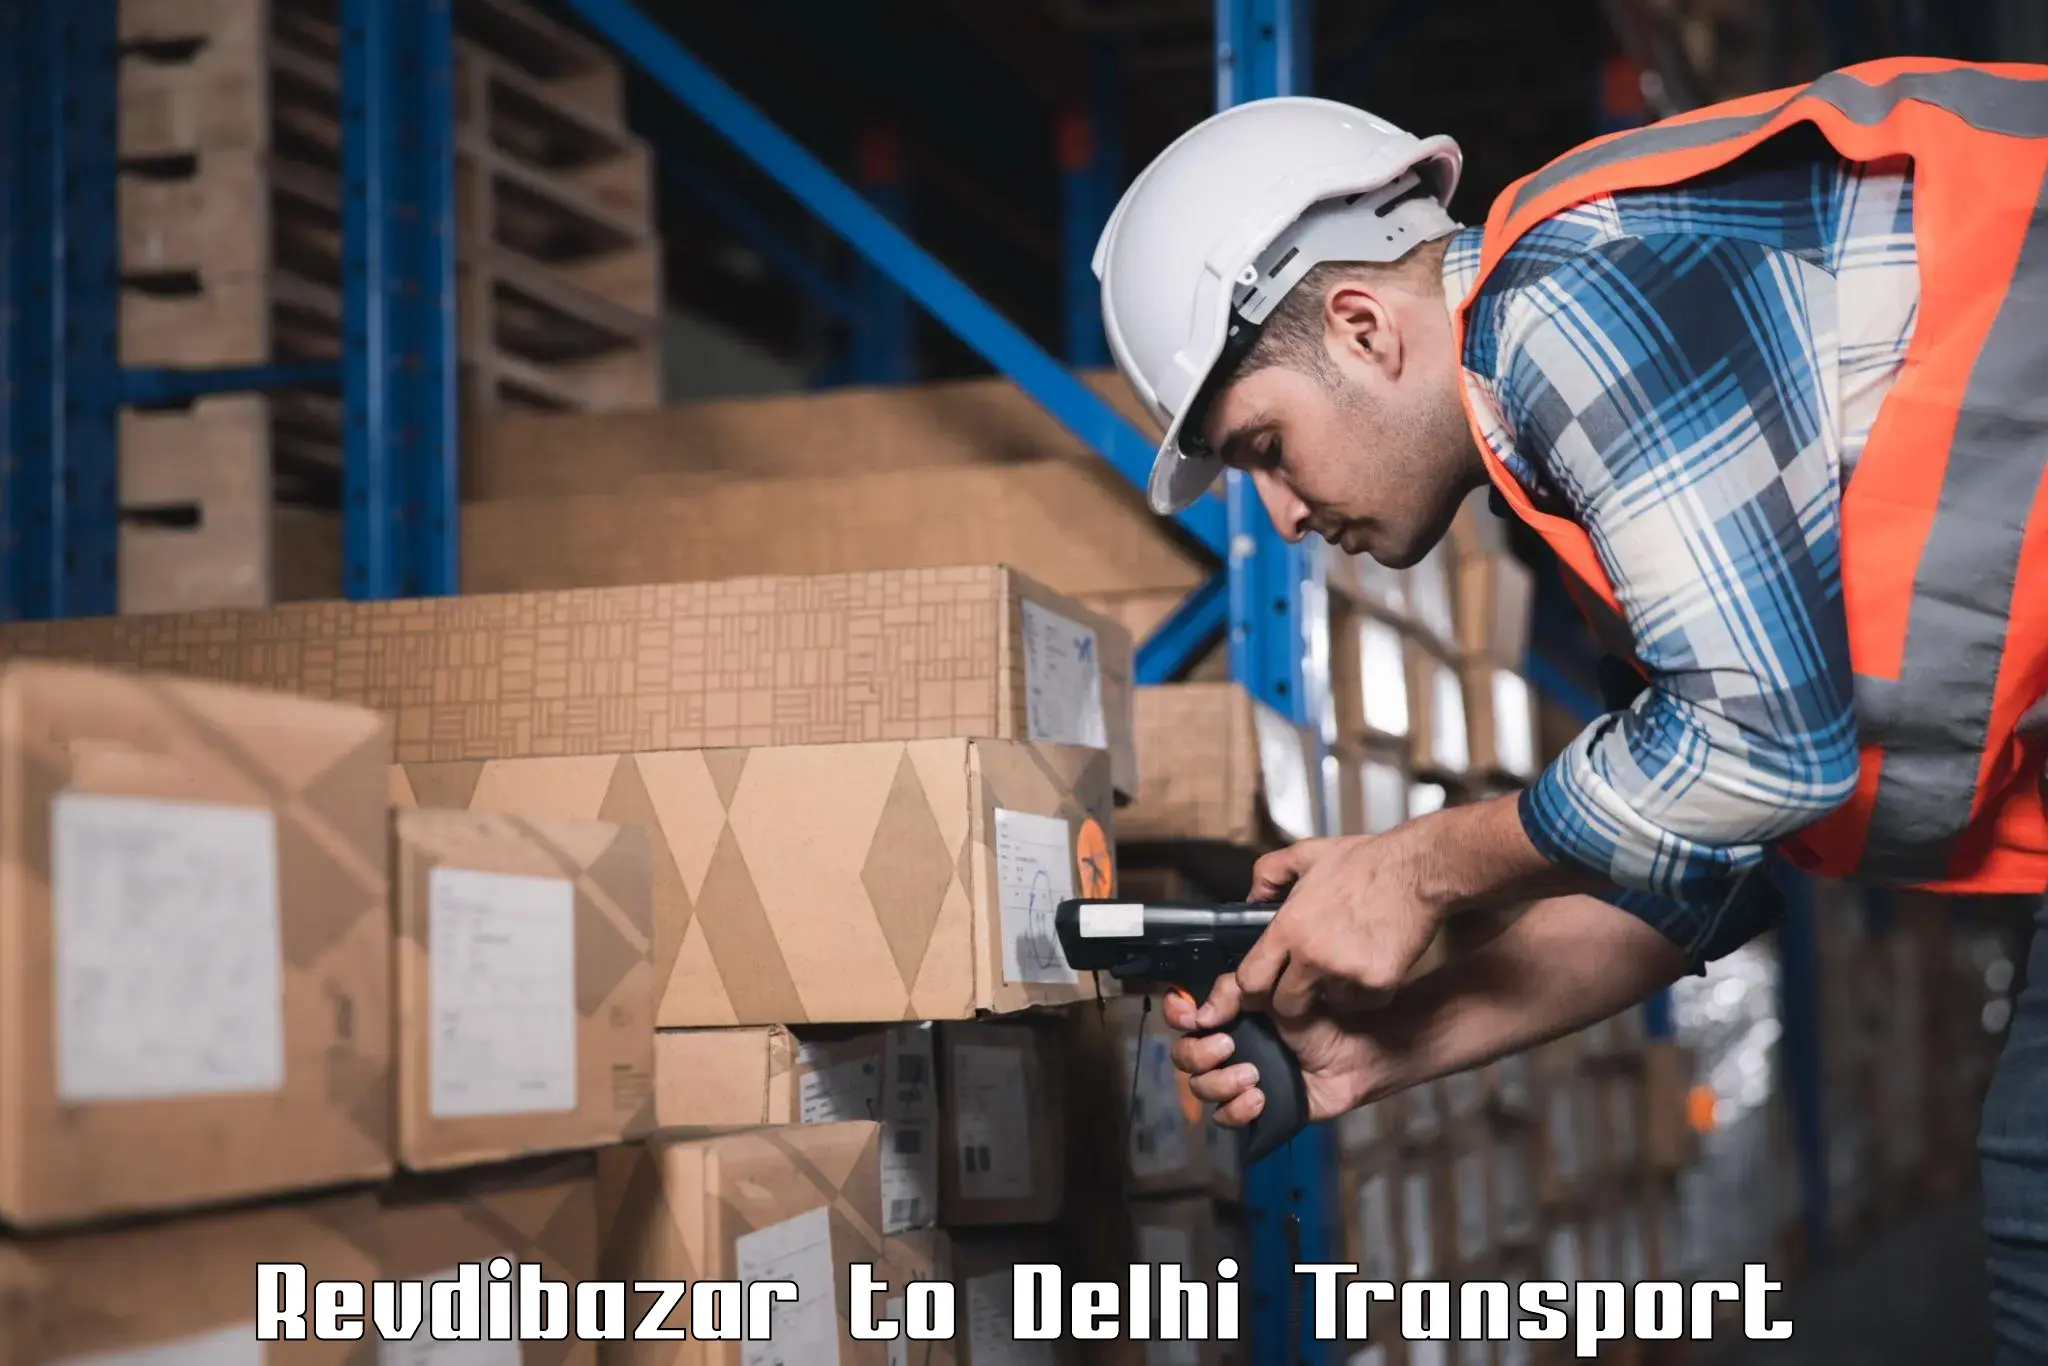 Shipping partner Revdibazar to Delhi